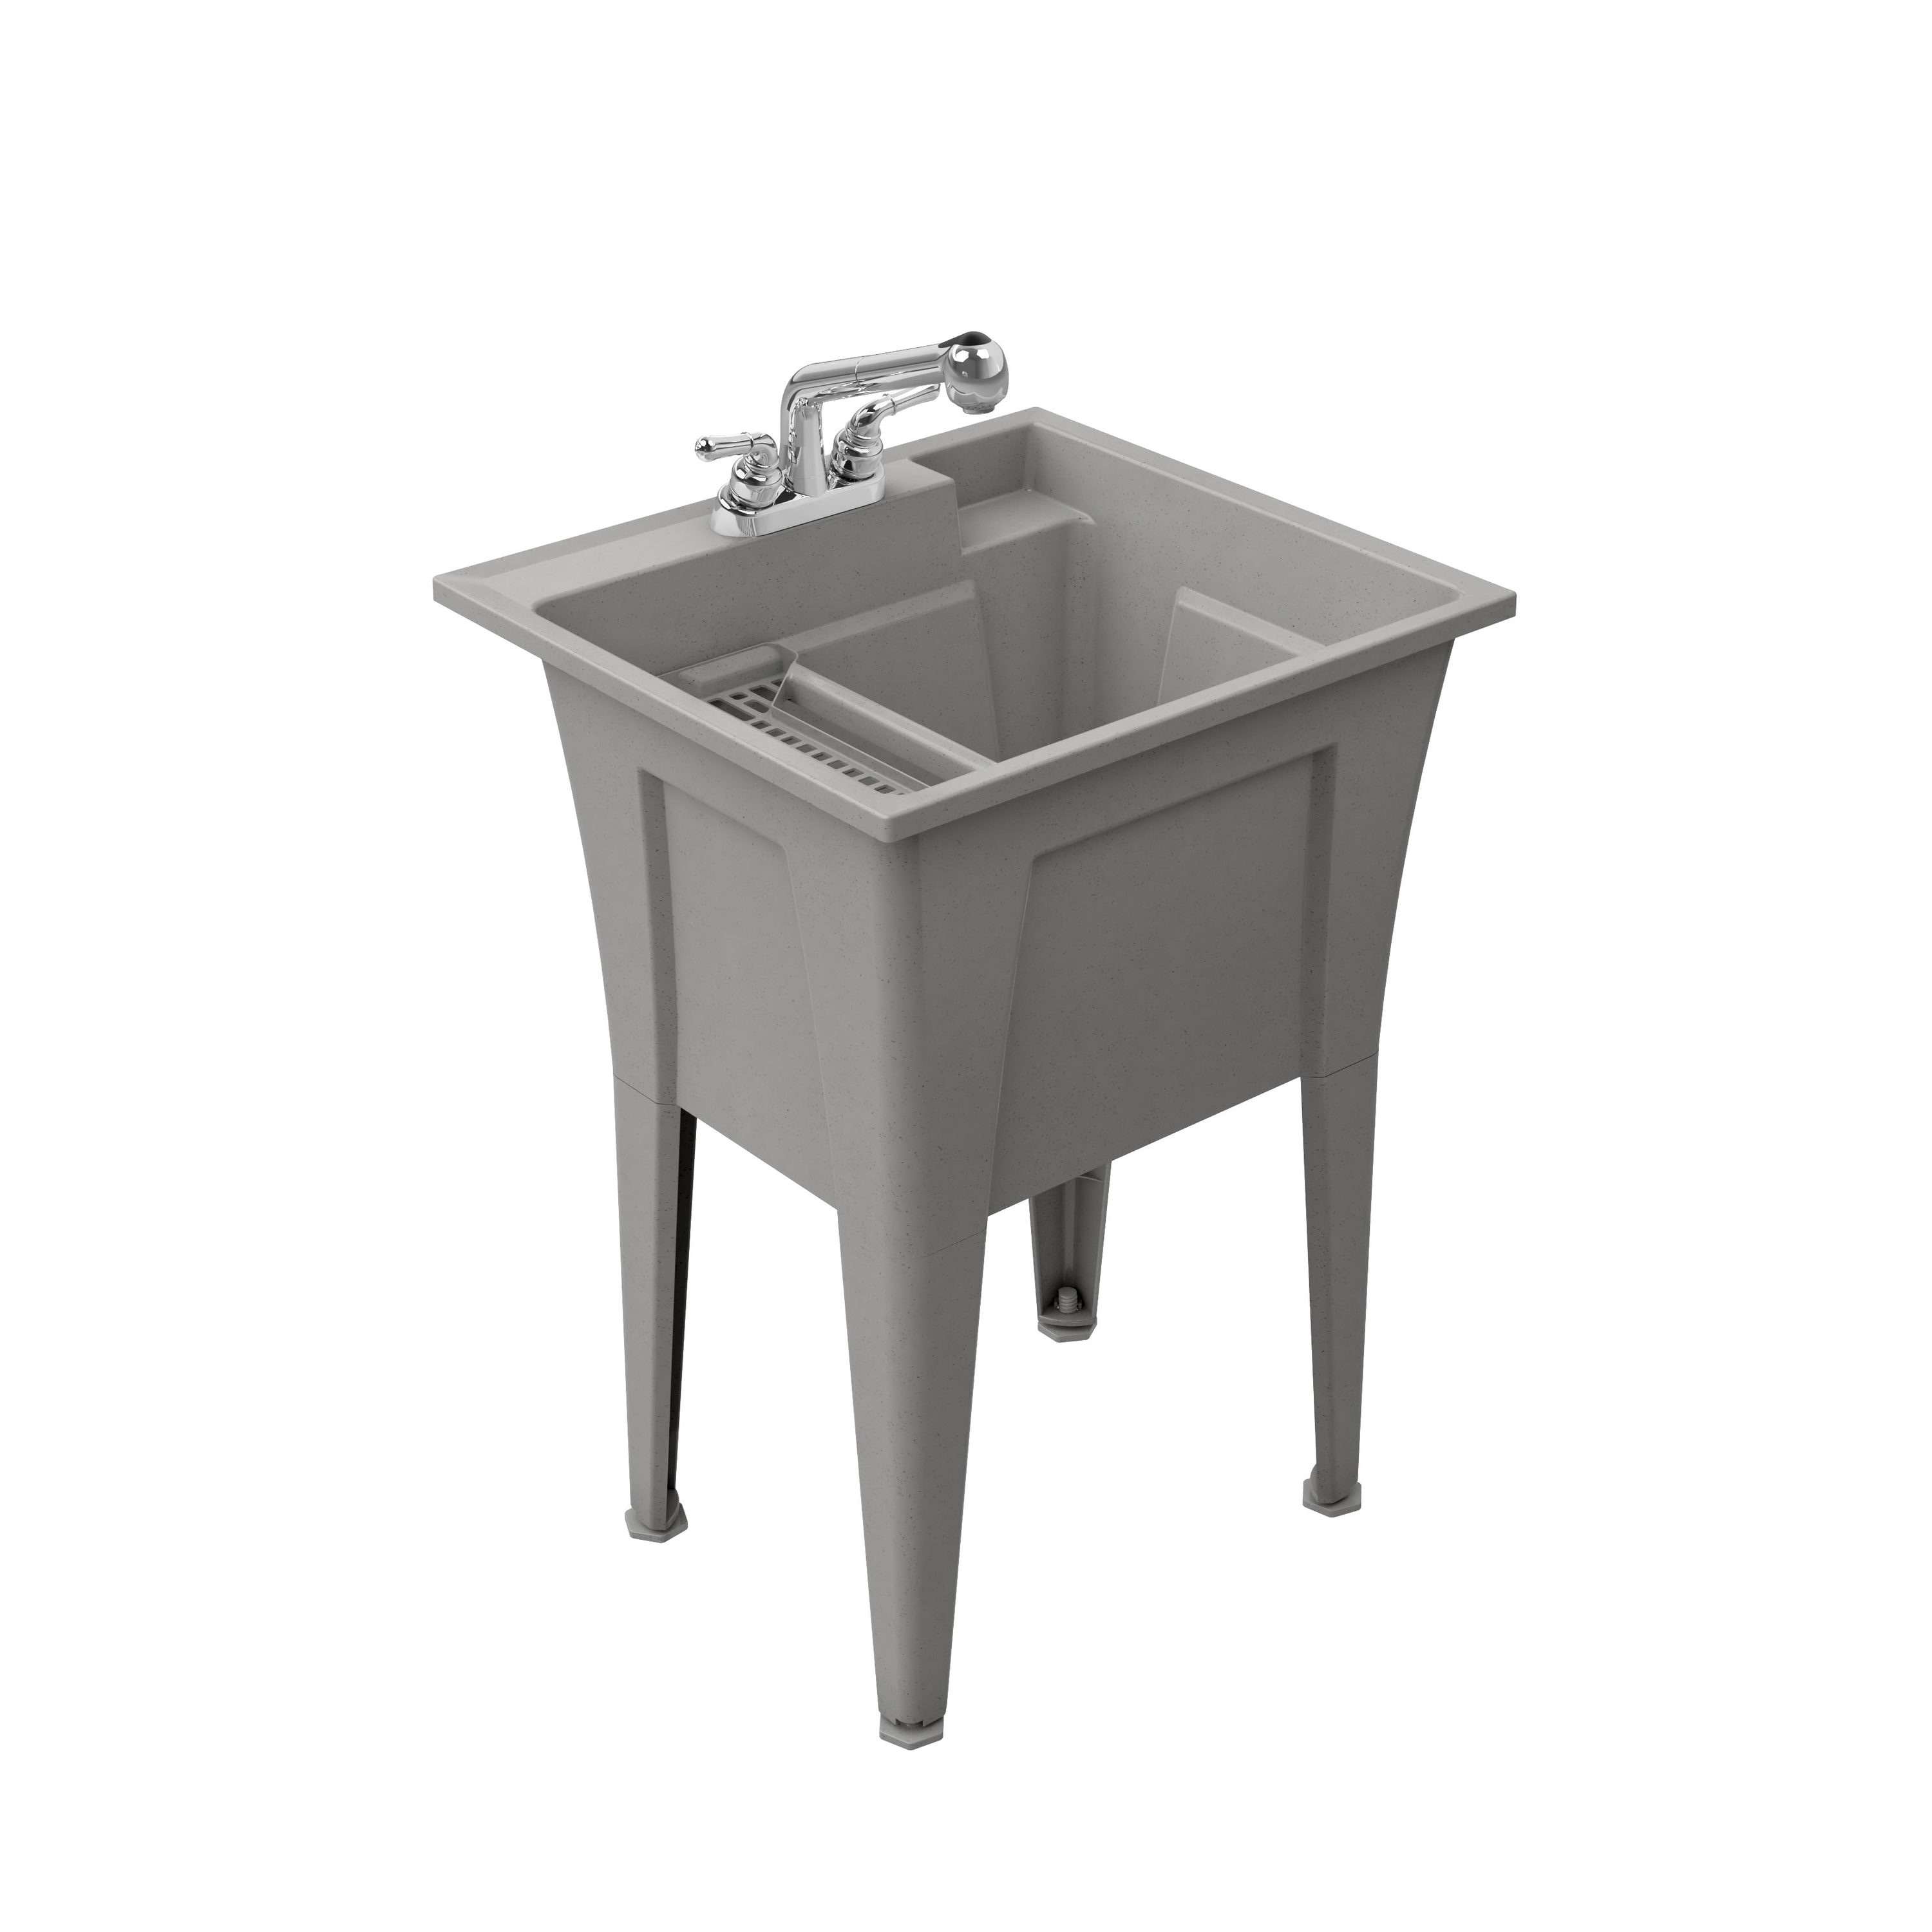 Regency 21 x 18 Stainless Steel Drop-In Hand Sink with Ice Bin